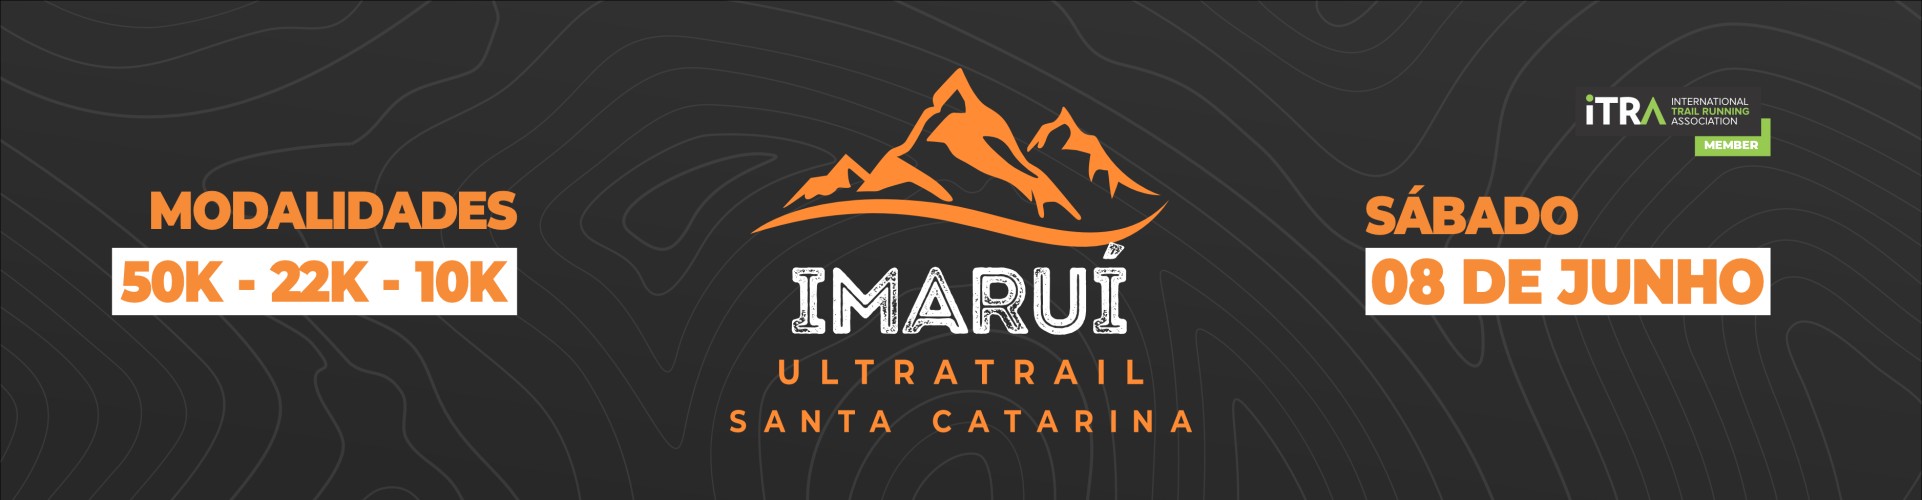 Imarui Ultra Trail